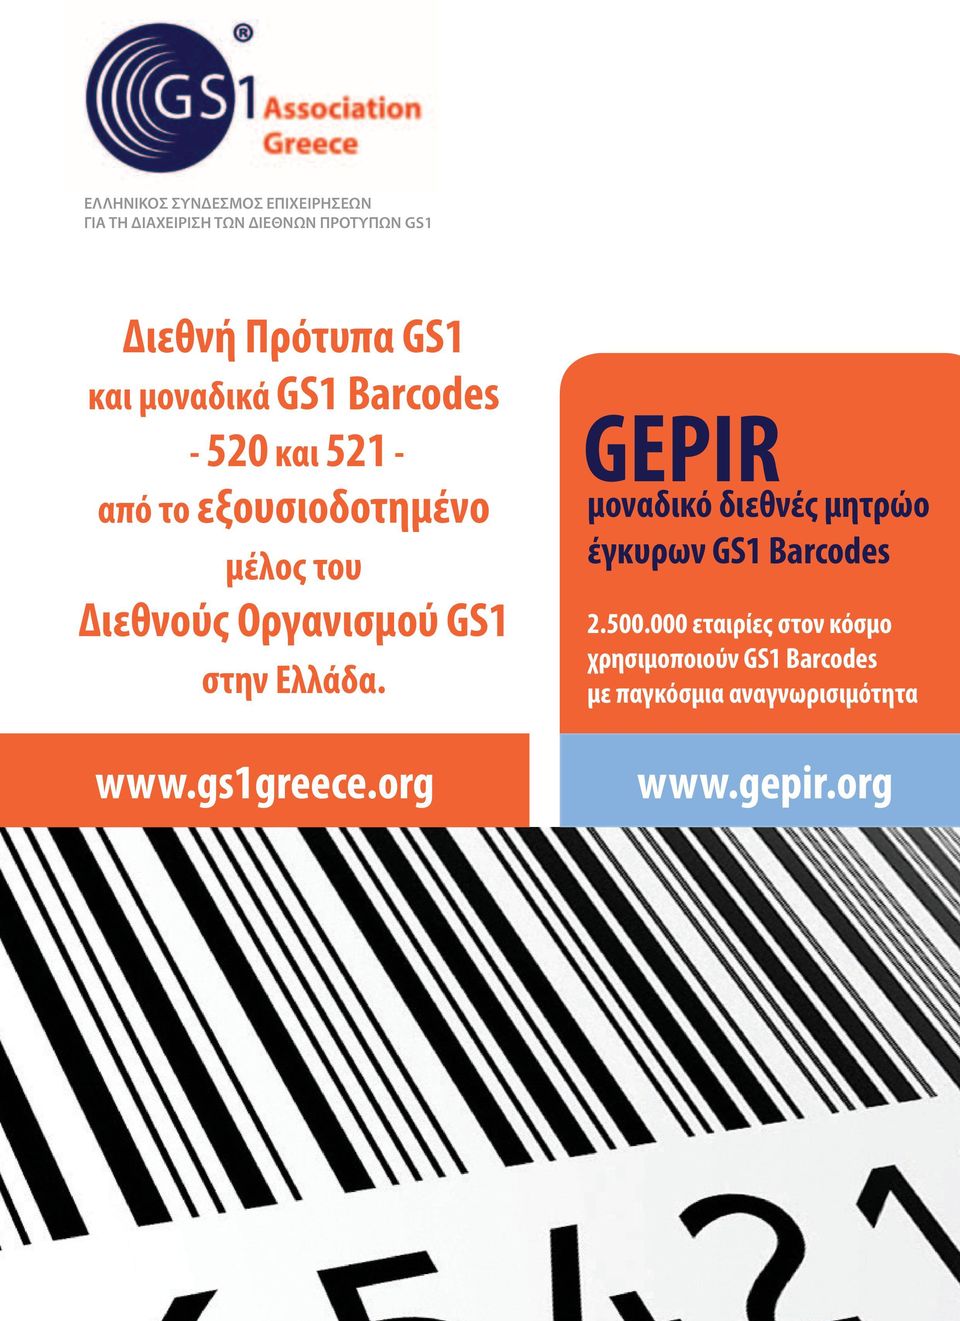 Οργανισμού GS1 στην Ελλάδα. www.gs1greece.